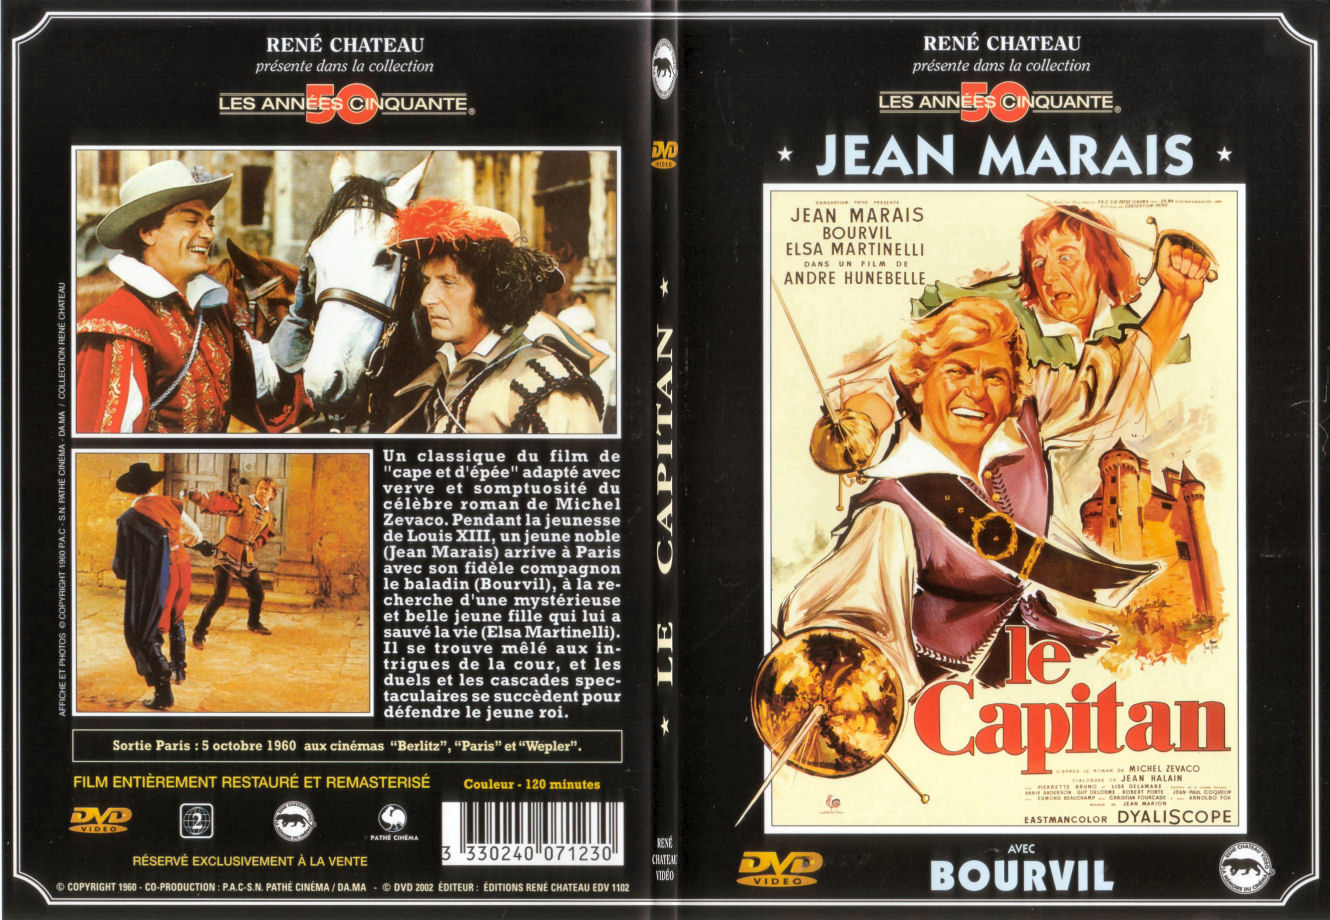 Jaquette DVD Le capitan - SLIM